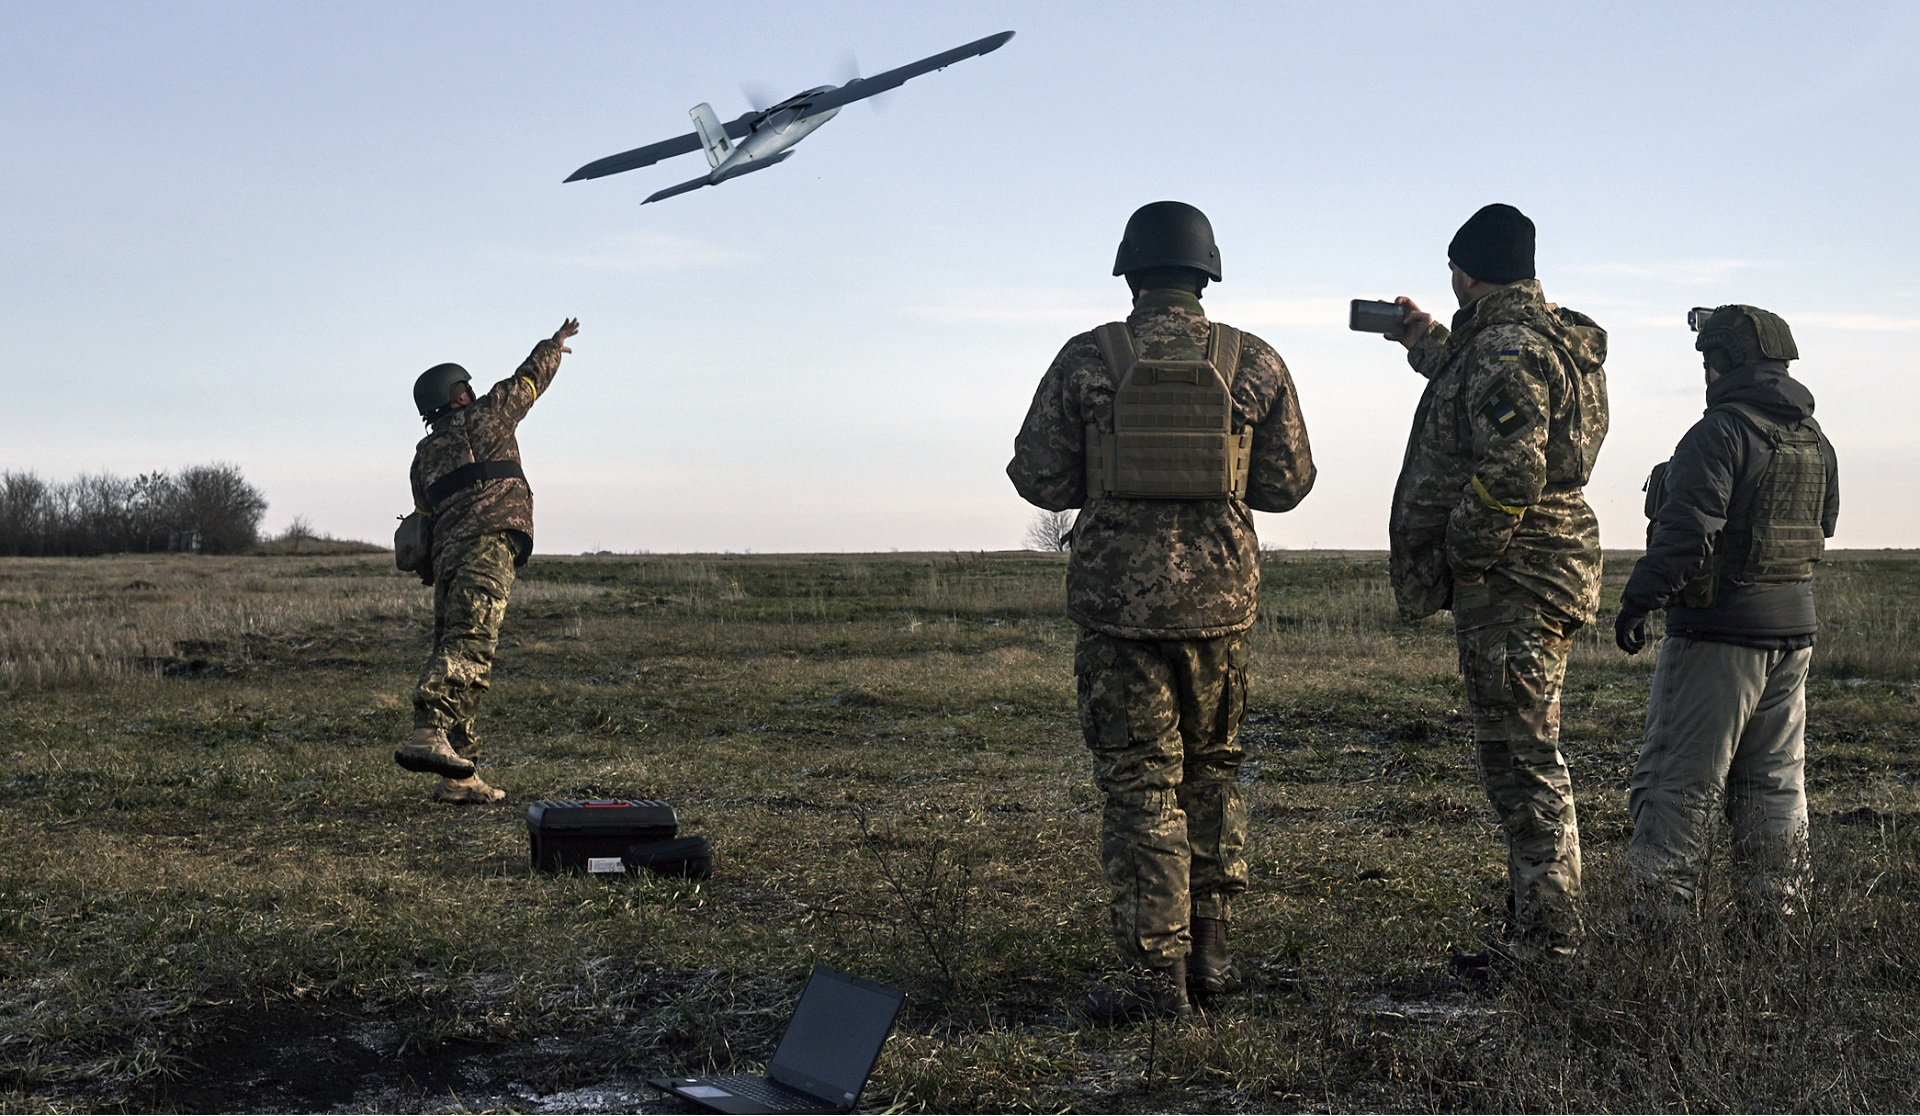 “Robots asesinos”: los drones desplegados en Ucrania adelantan una nueva era de las guerras